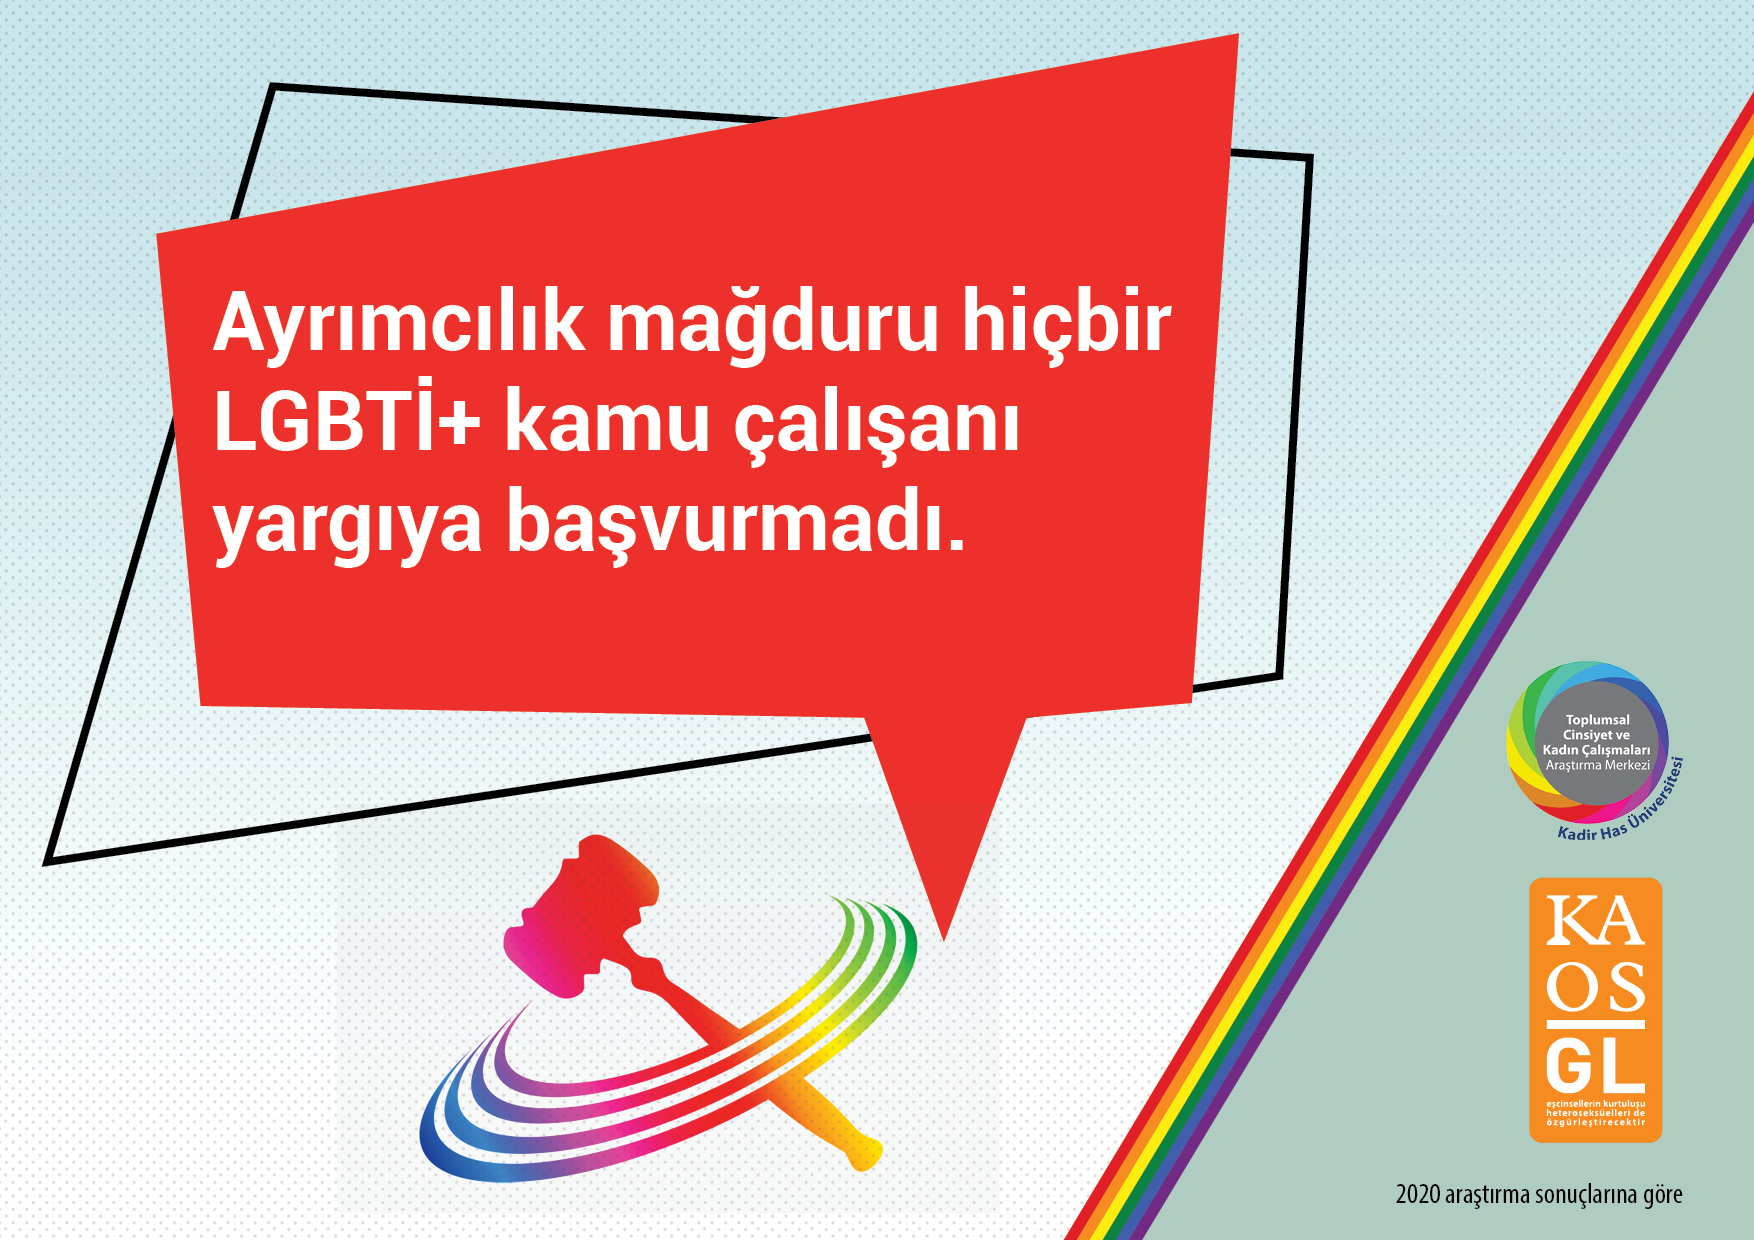 “LGBTİ+ kamu çalışanları ayrımcılığa karşı resmi kanallara güvenmiyor” | Kaos GL - LGBTİ+ Haber Portalı Haber